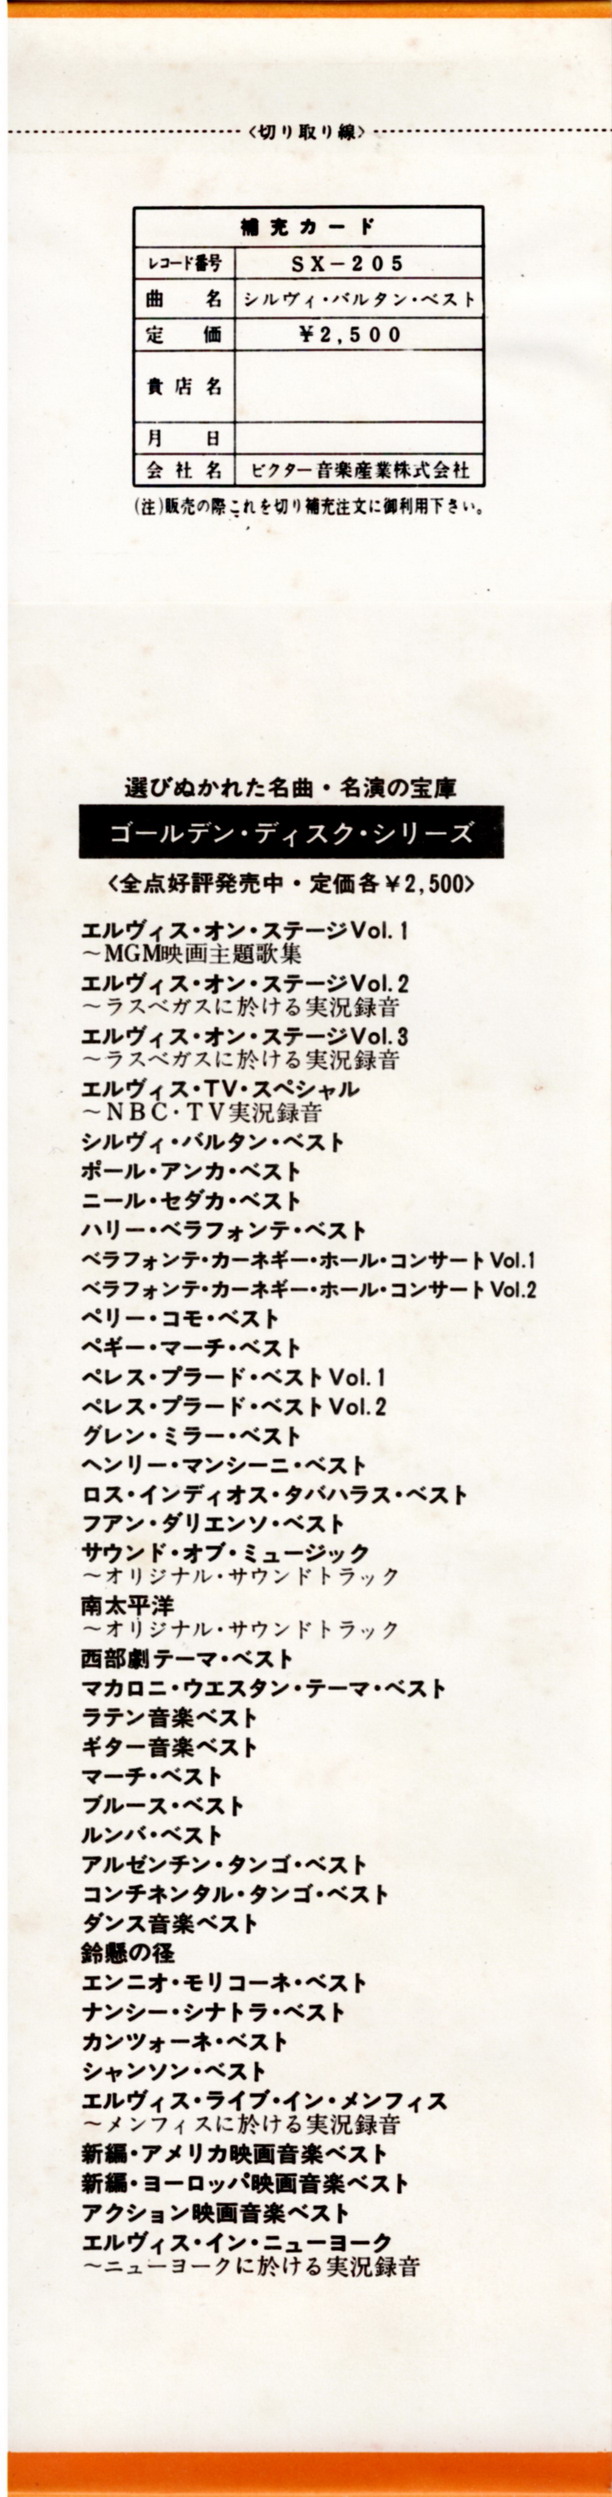 Discographie Japonaise - 4ème partie (33 T COMPILATION) - Page 9 Jpn_3133